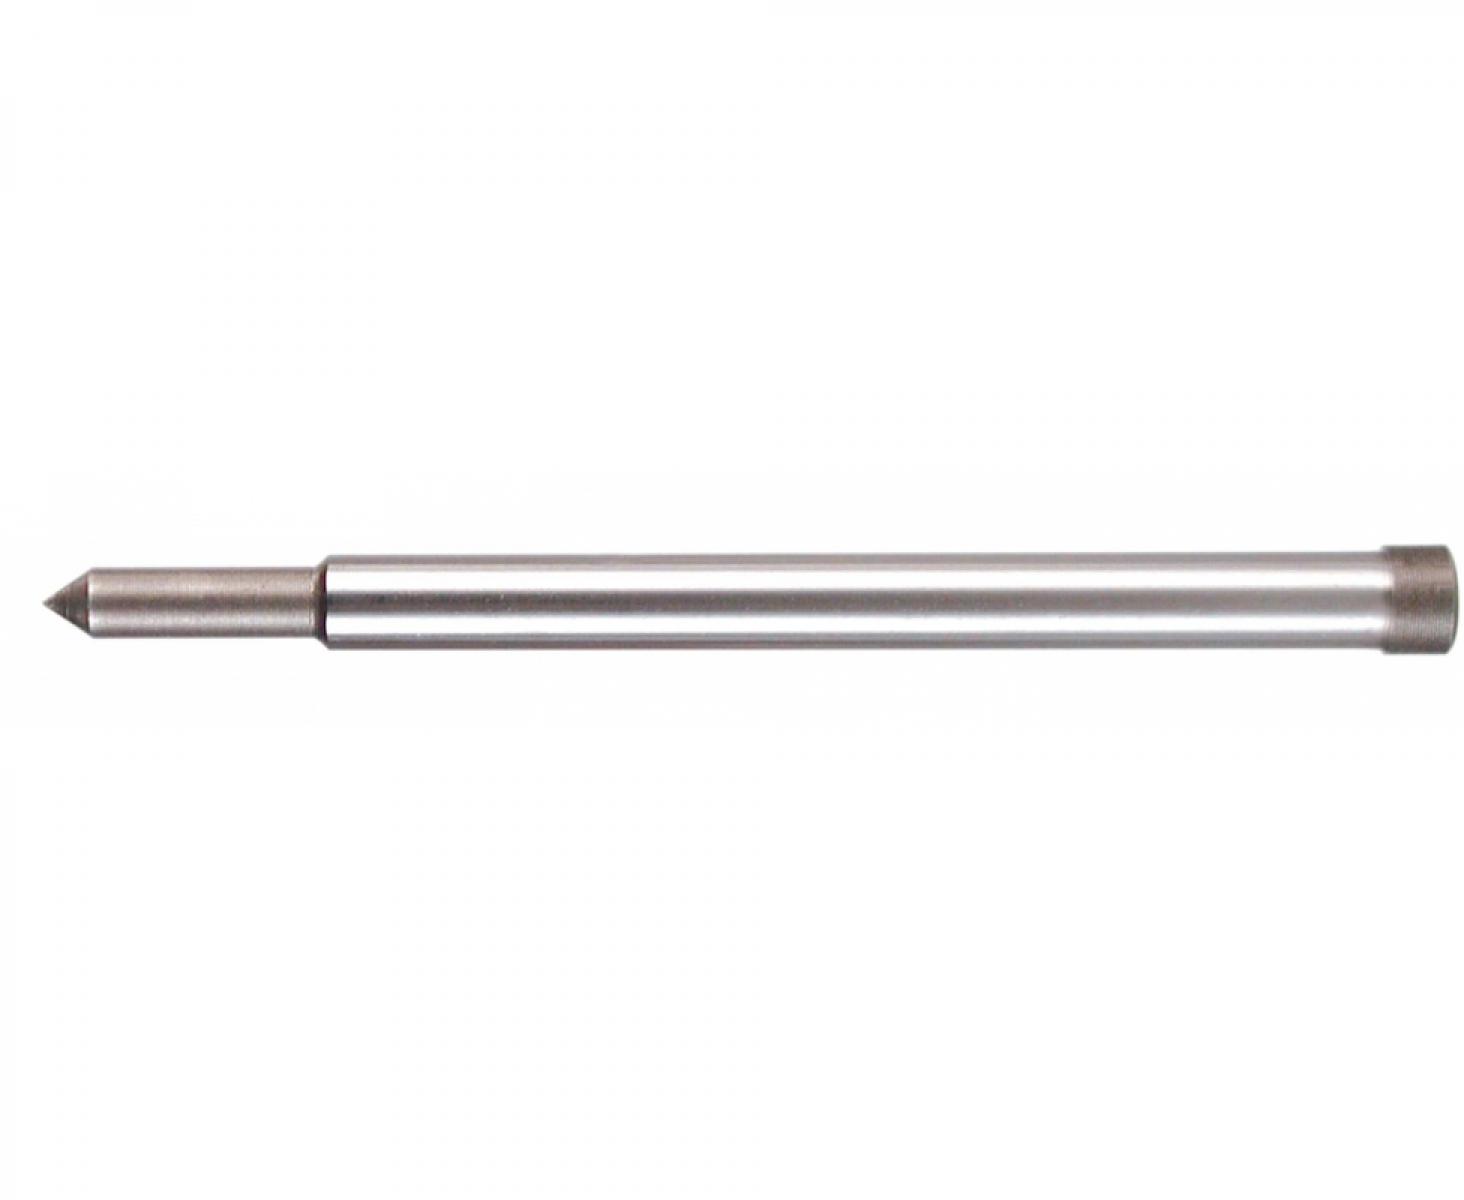 Центрирующий штифт Ø 6,35 х 77 мм для корончатых сверл HSS 30 мм с хвостовиком Weldon 3/4" Ruko 108304